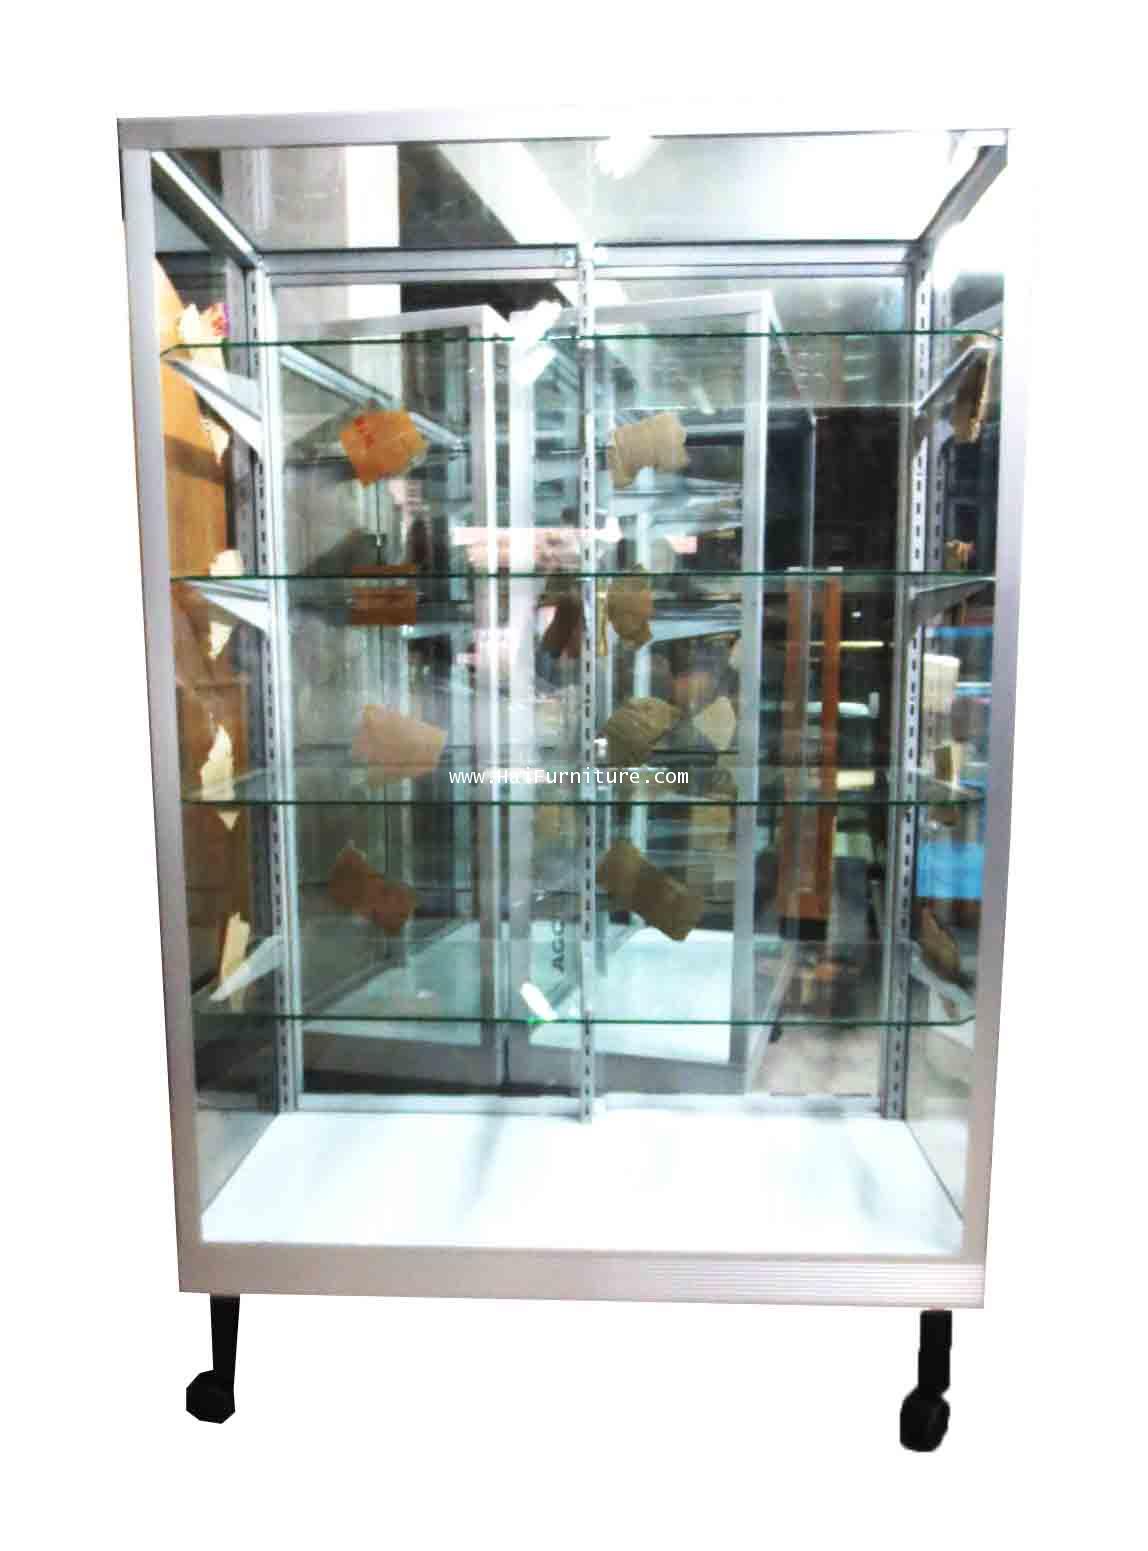 S3H ตู้โชว์ ตู้กระจกแสดงสินค้า ขอบอลูมิเนียม 3 ฟุต ทรงสูง ชั้นปรับ 93*42*150 ซม. 1